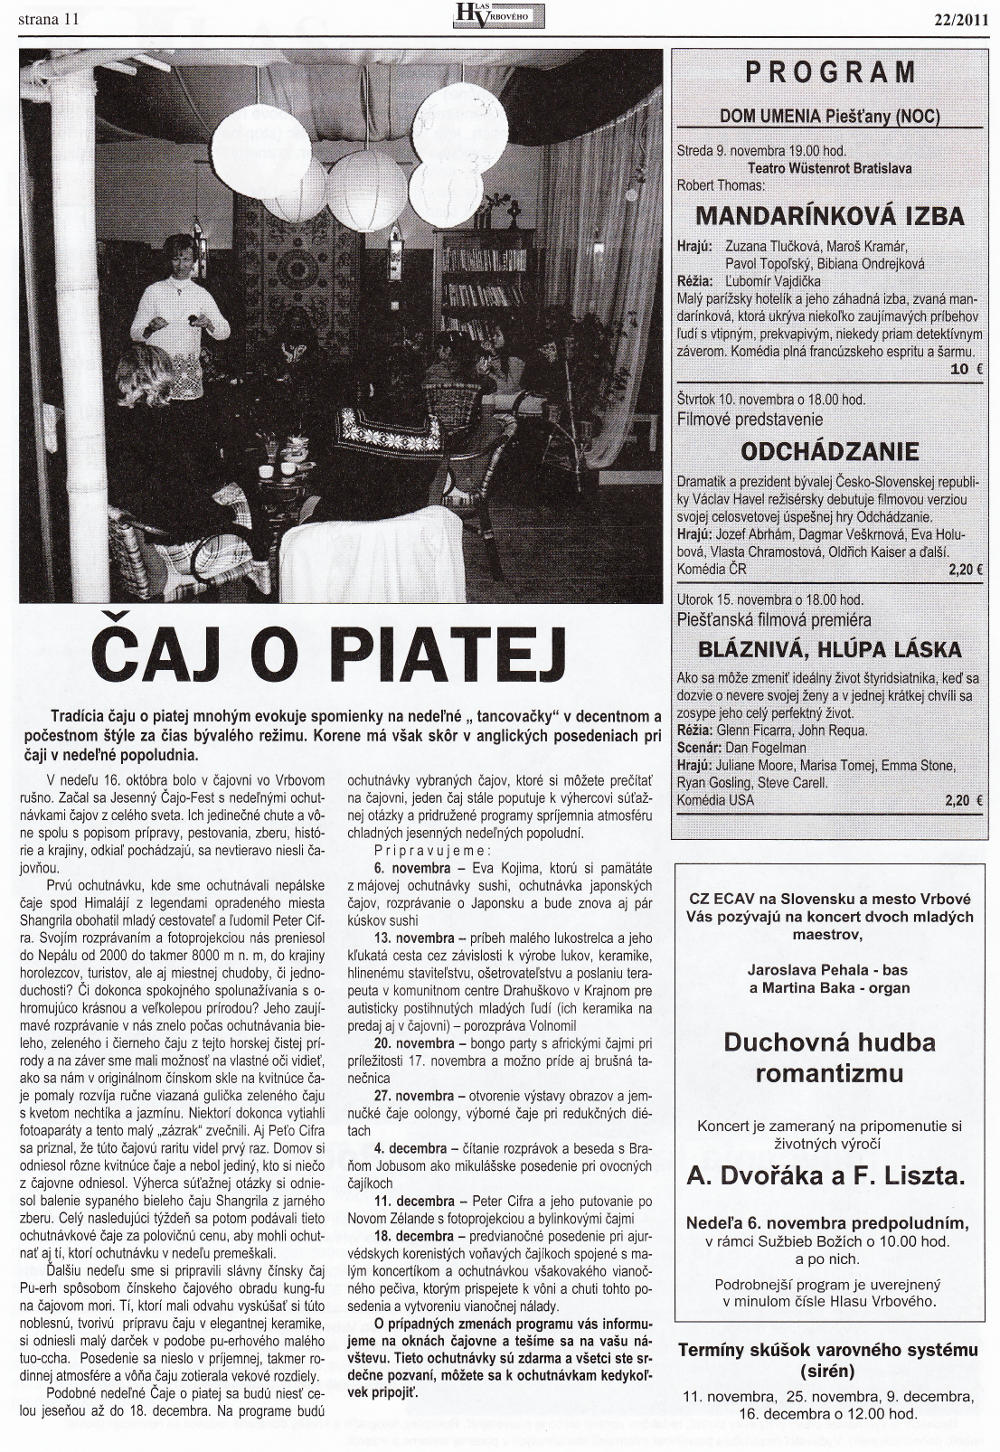 Hlas Vrbového 22/2011, strana 11